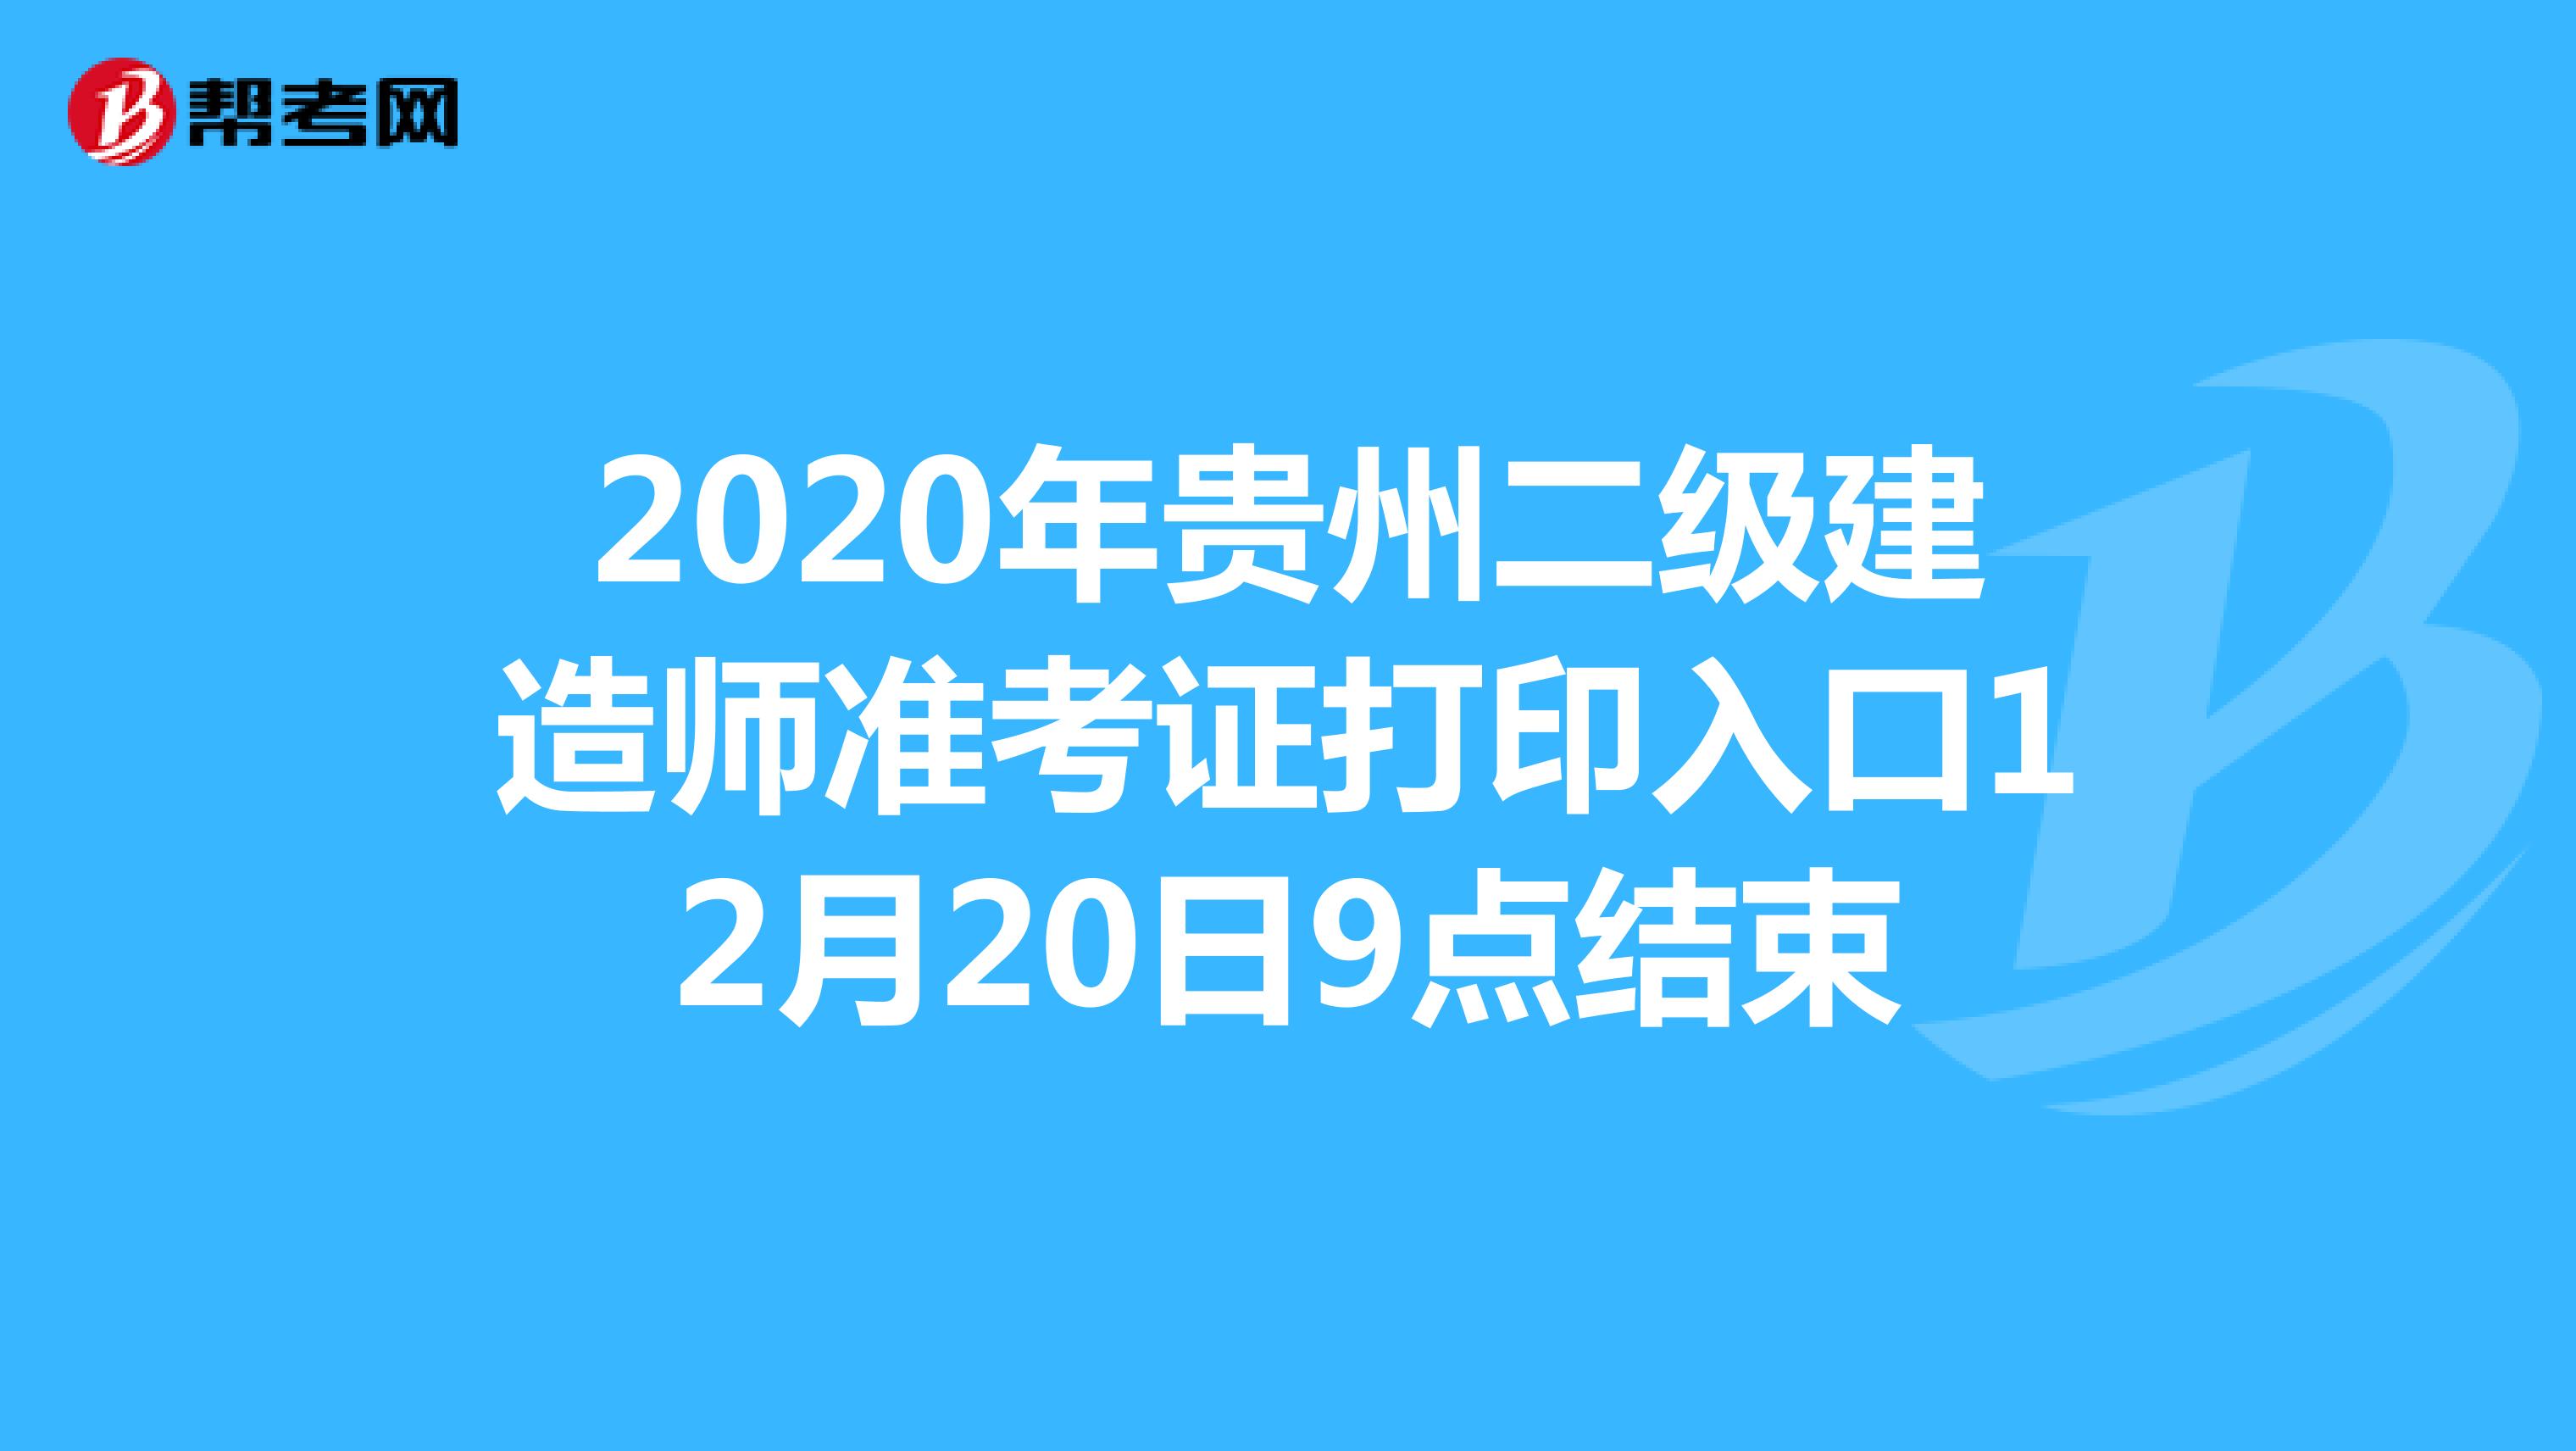 2020年贵州二级建造师准考证打印入口12月20日9点结束